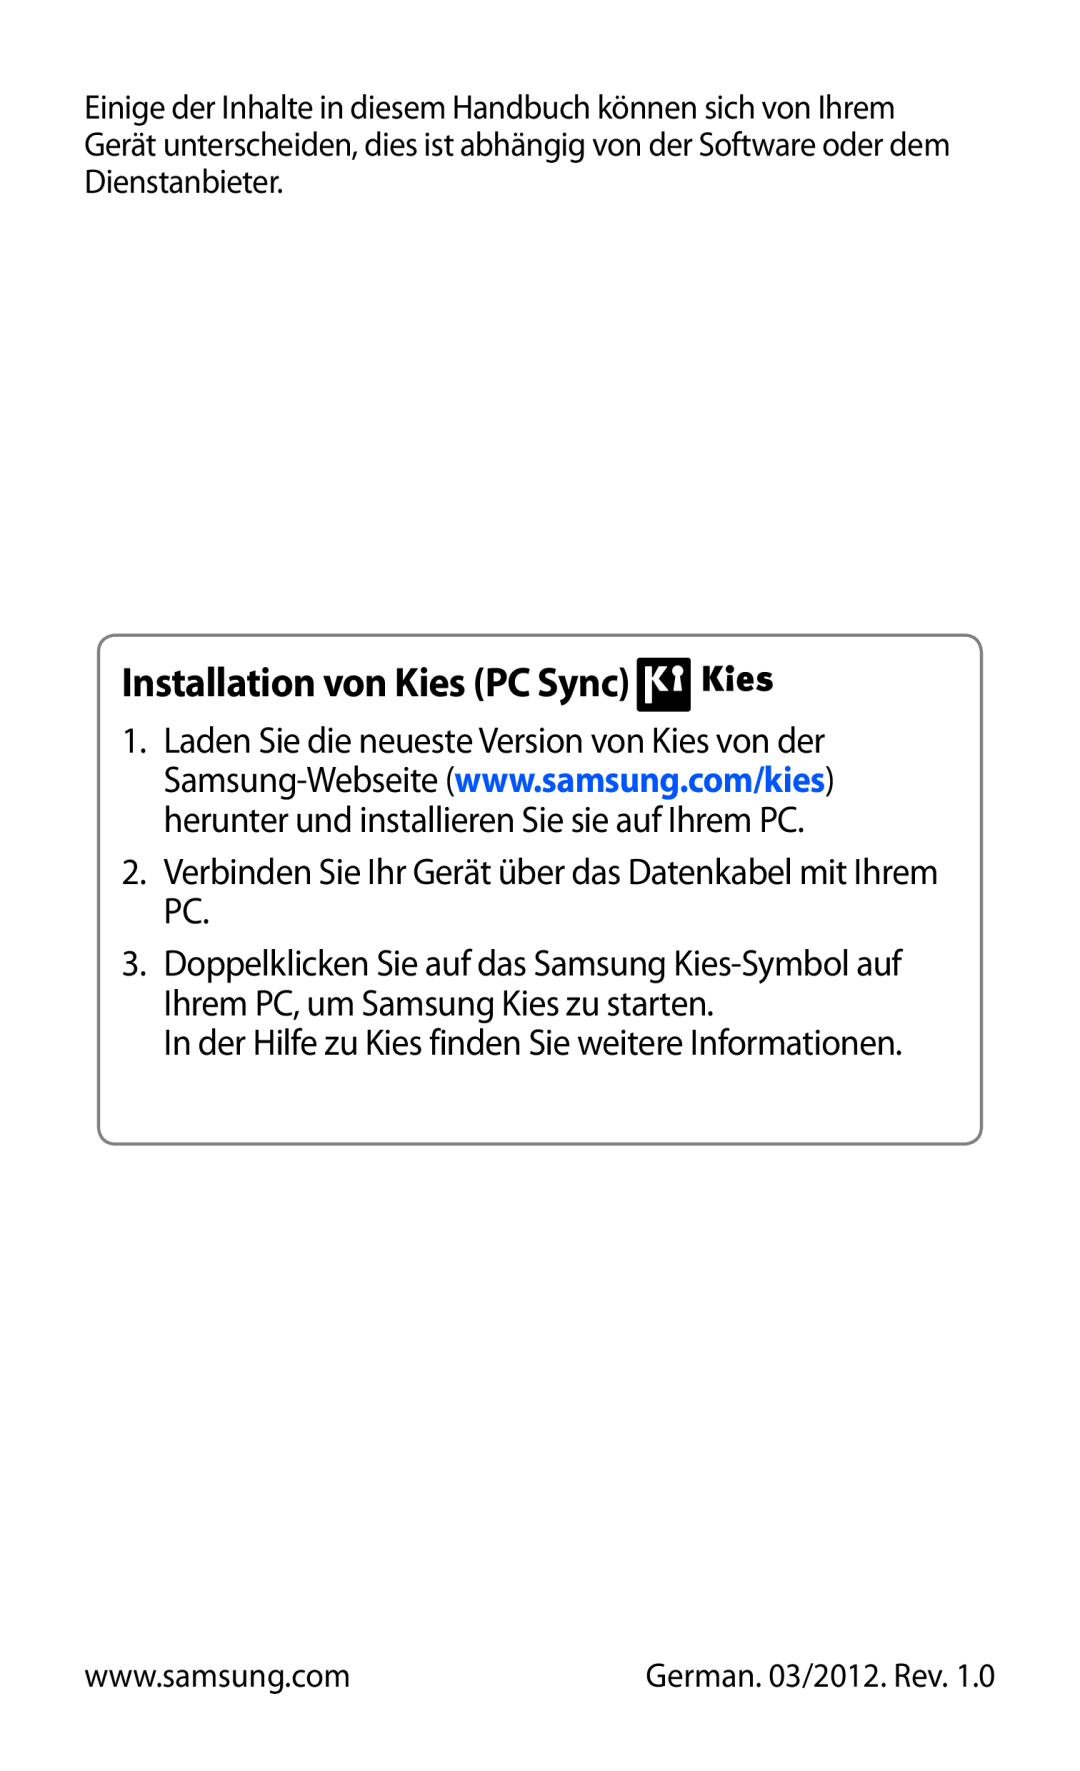 Samsung GT-S6500XKAVGR, GT-S6500RWAVGR manual A Kies PC Sync telepítése, További információkat a Kies súgójában találhat 